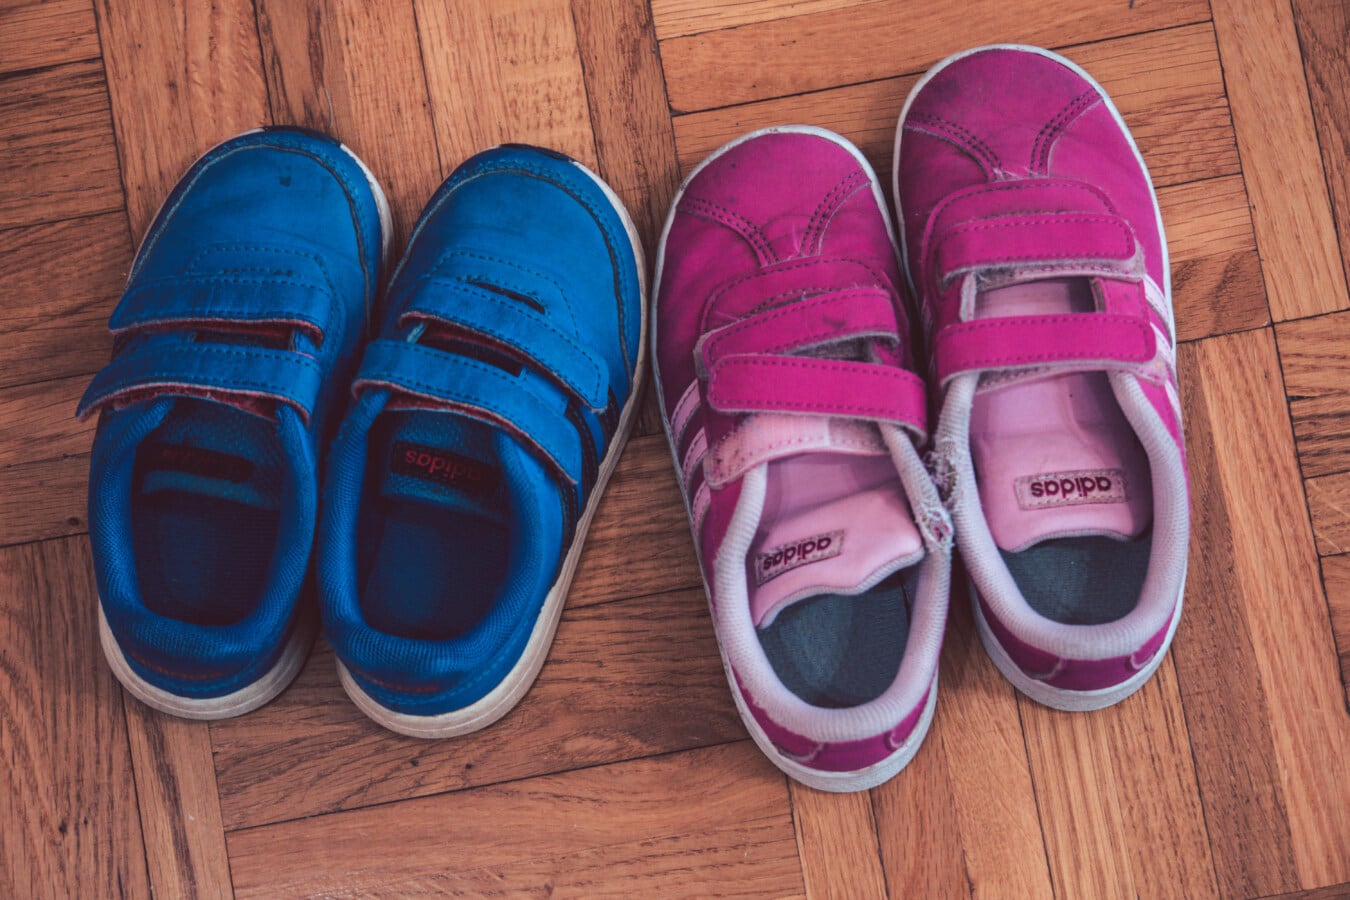 粉色, 深蓝, 运动鞋, 鞋, 舒适, 休闲, 阿迪达斯, 覆盖, 时尚, 皮革